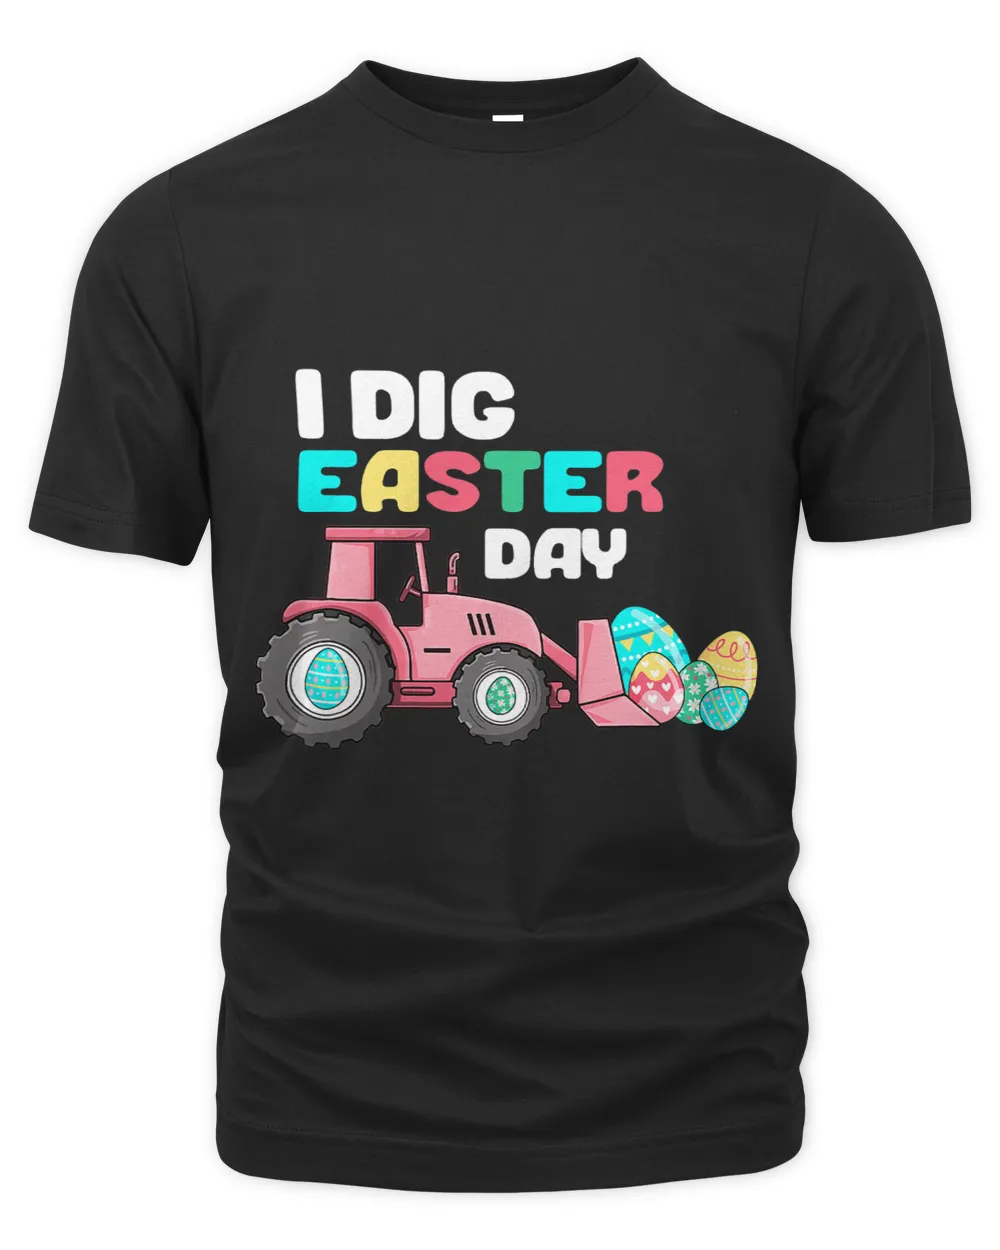 Easter Egg Hunt Shirt For Kids Girls Funny Digging Easter